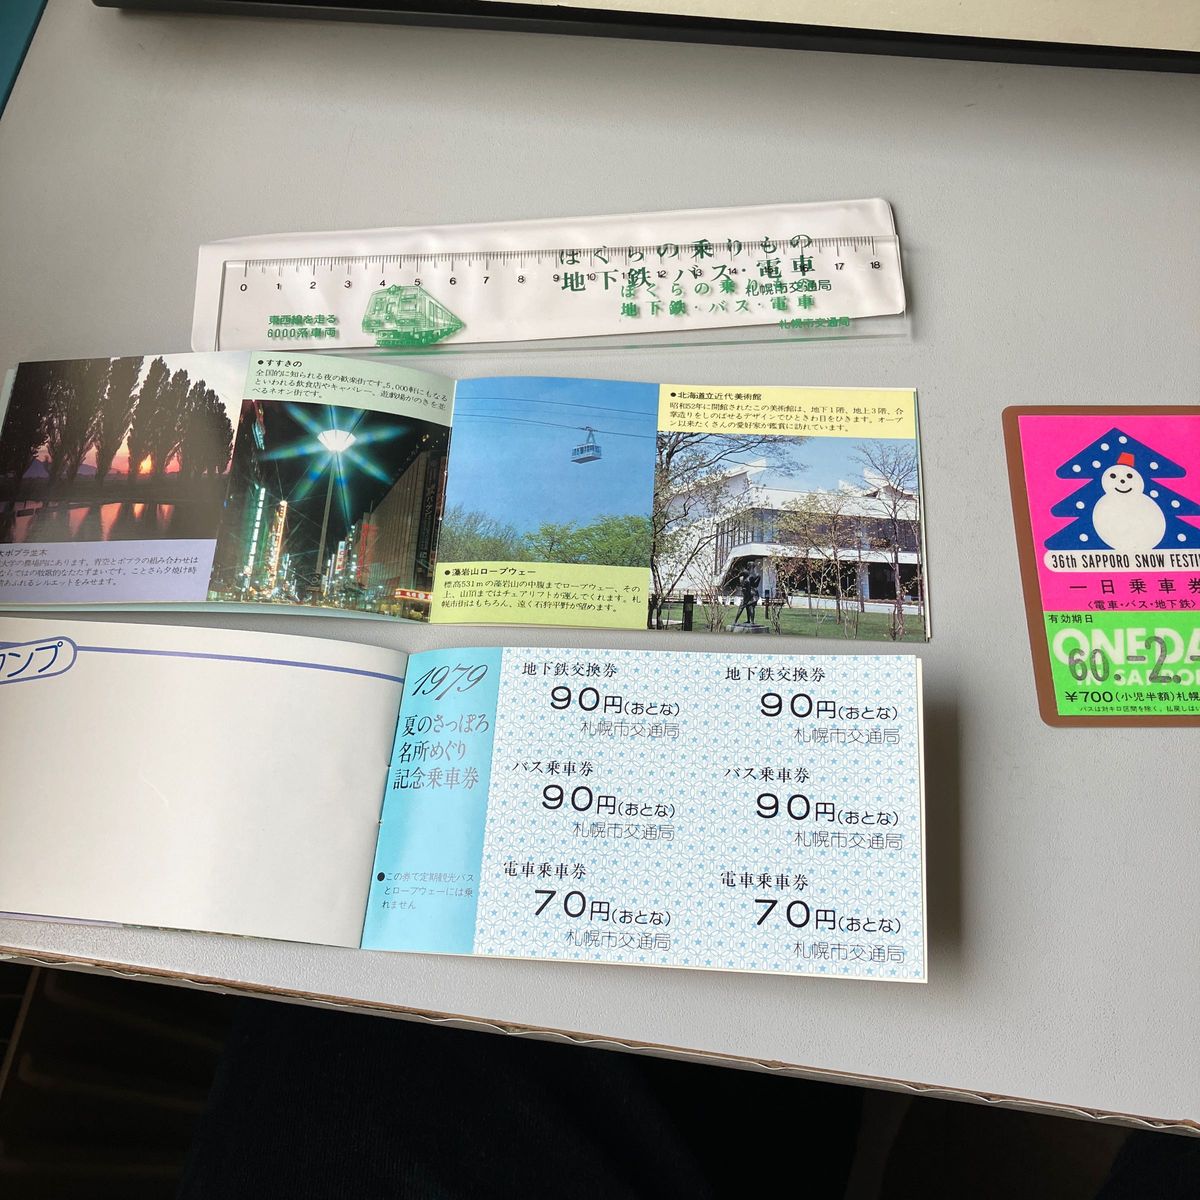 地下鉄コレクションで1979札幌夏の名所めぐり記念乗車券2冊に60年札幌雪祭り一日乗車券と記念定規です。断捨離出品します。